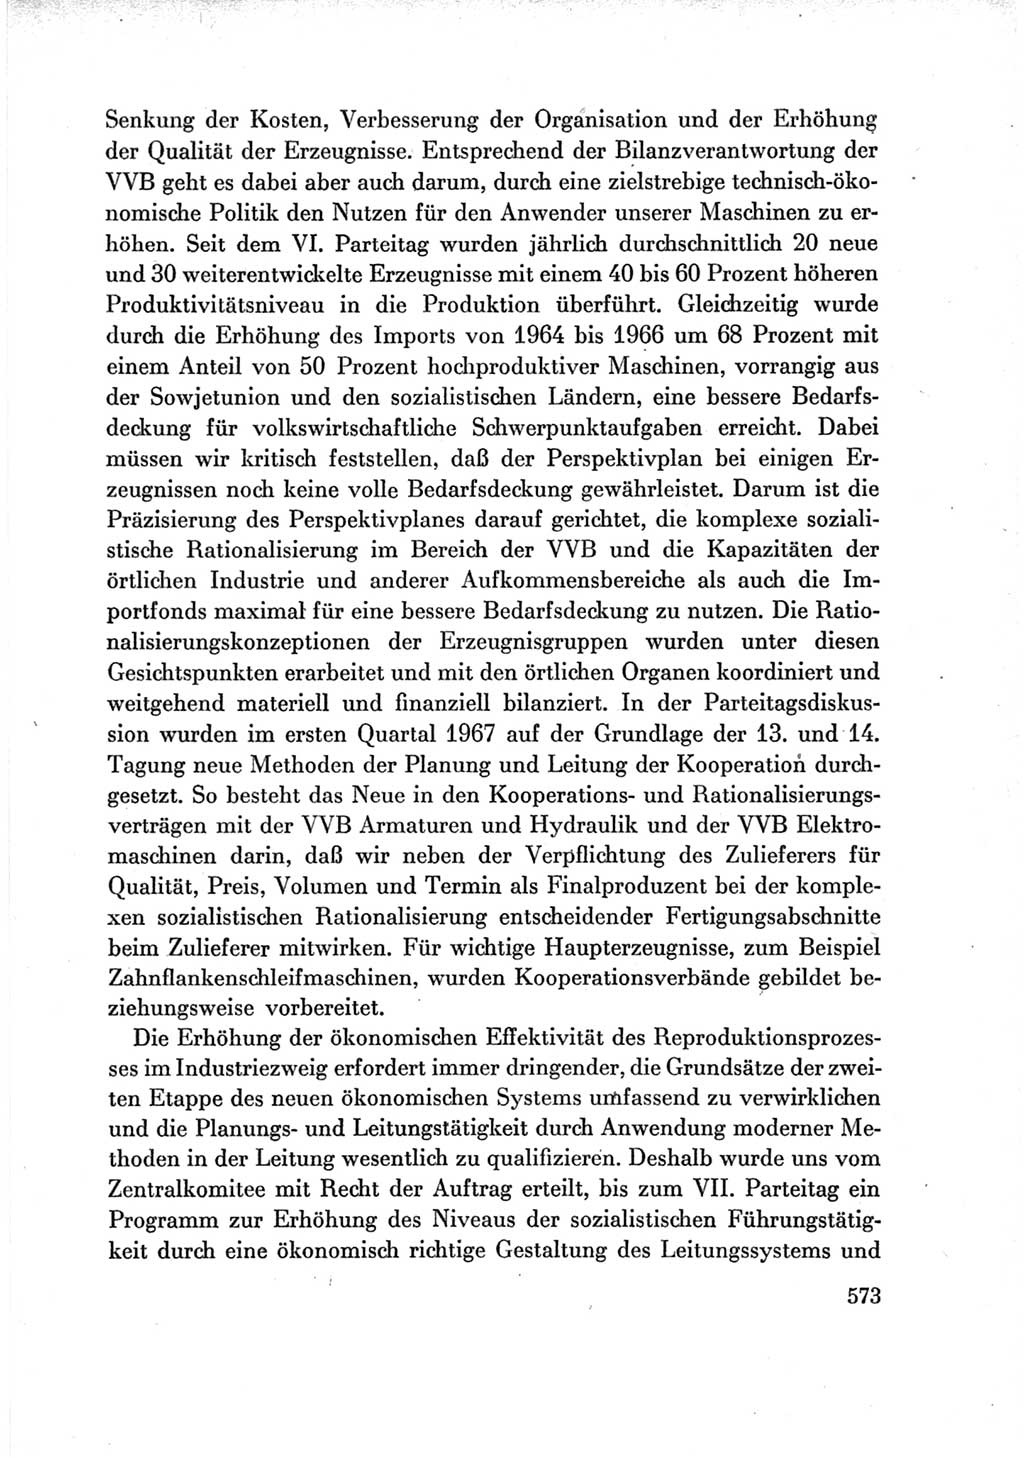 Protokoll der Verhandlungen des Ⅶ. Parteitages der Sozialistischen Einheitspartei Deutschlands (SED) [Deutsche Demokratische Republik (DDR)] 1967, Band Ⅲ, Seite 573 (Prot. Verh. Ⅶ. PT SED DDR 1967, Bd. Ⅲ, S. 573)